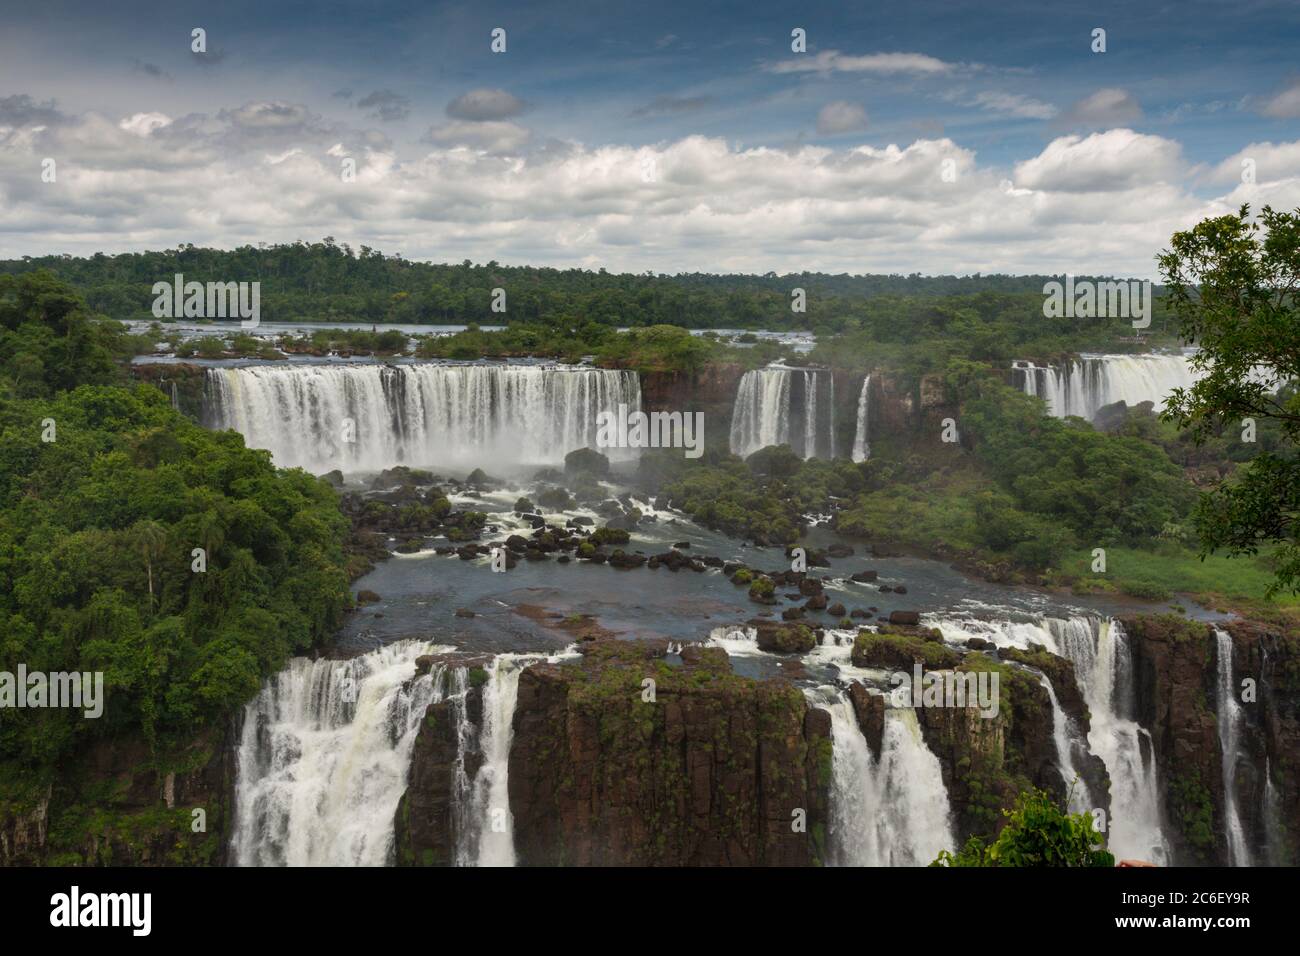 Iguazu Falls / Cataratas del Iguazú in Misiones Province, Argentina Stock Photo